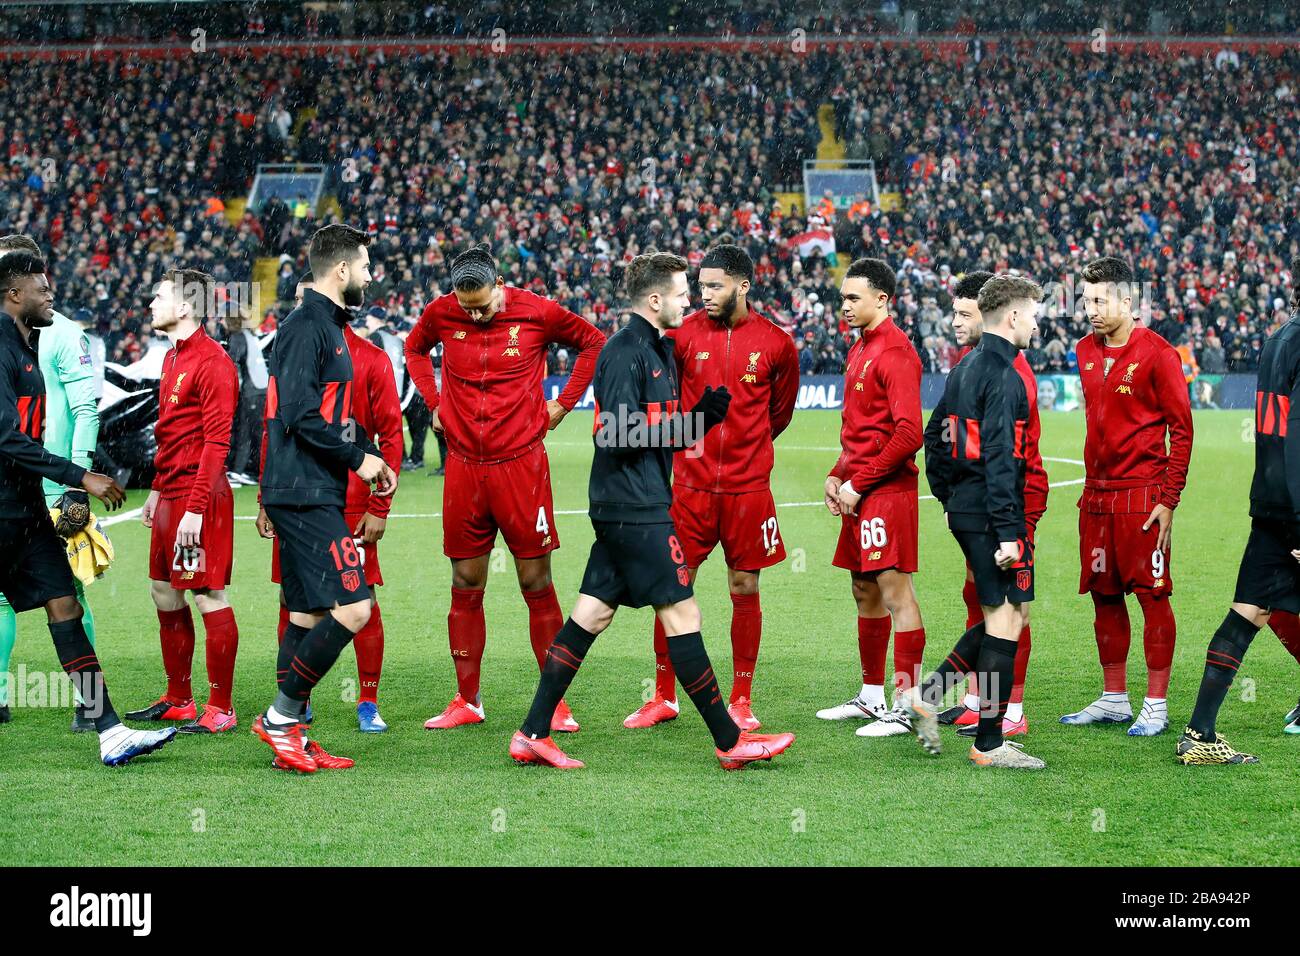 Les joueurs de Liverpool et de l'Atletico Madrid se saluent avant le match Banque D'Images